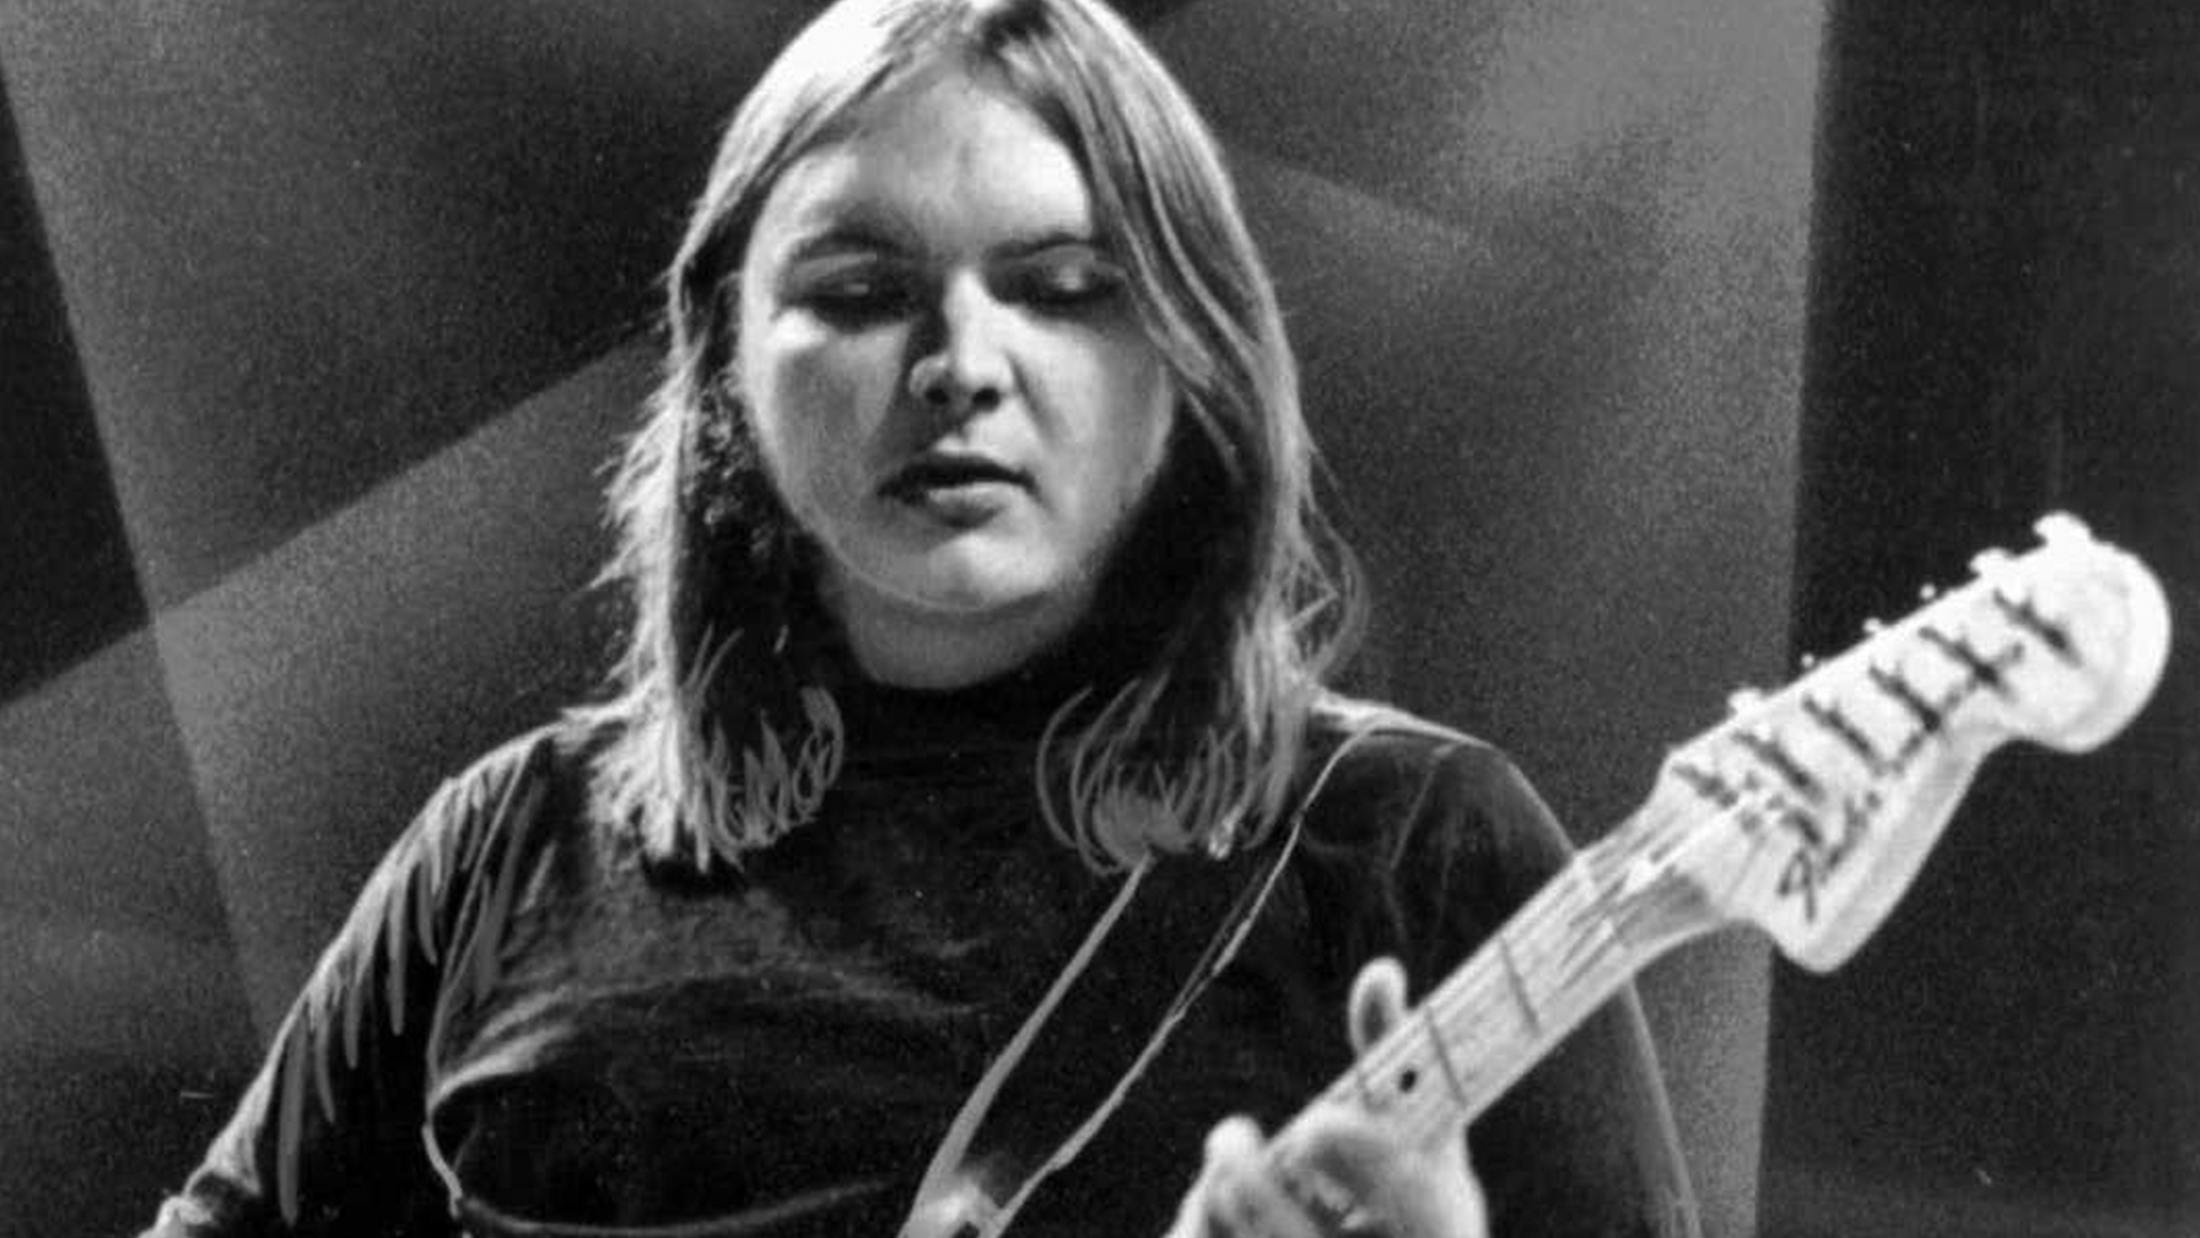 Lynyrd Skynyrd Guitarist Ed King Has Died At 68